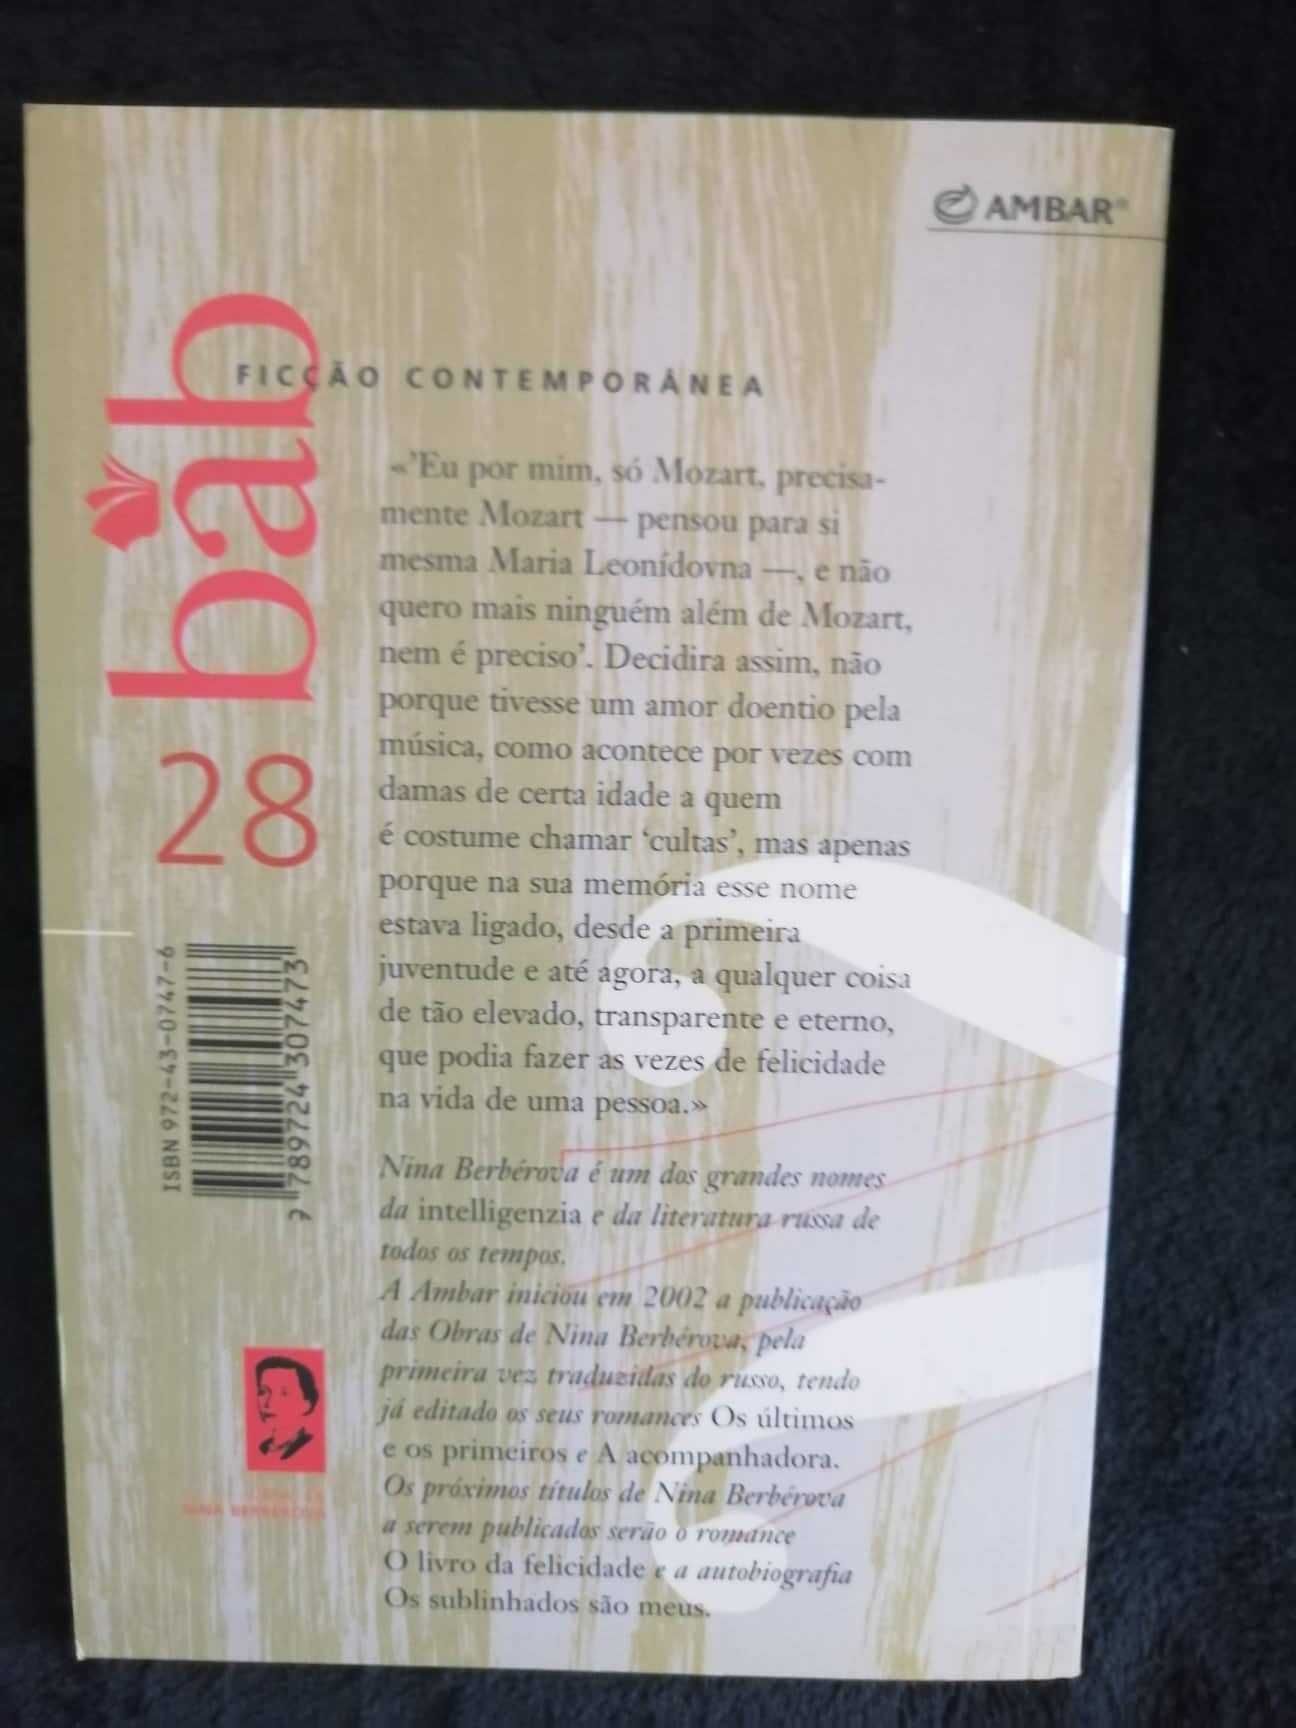 Livro "A ressureição de Mozart" de Nina Bérberova - como novo